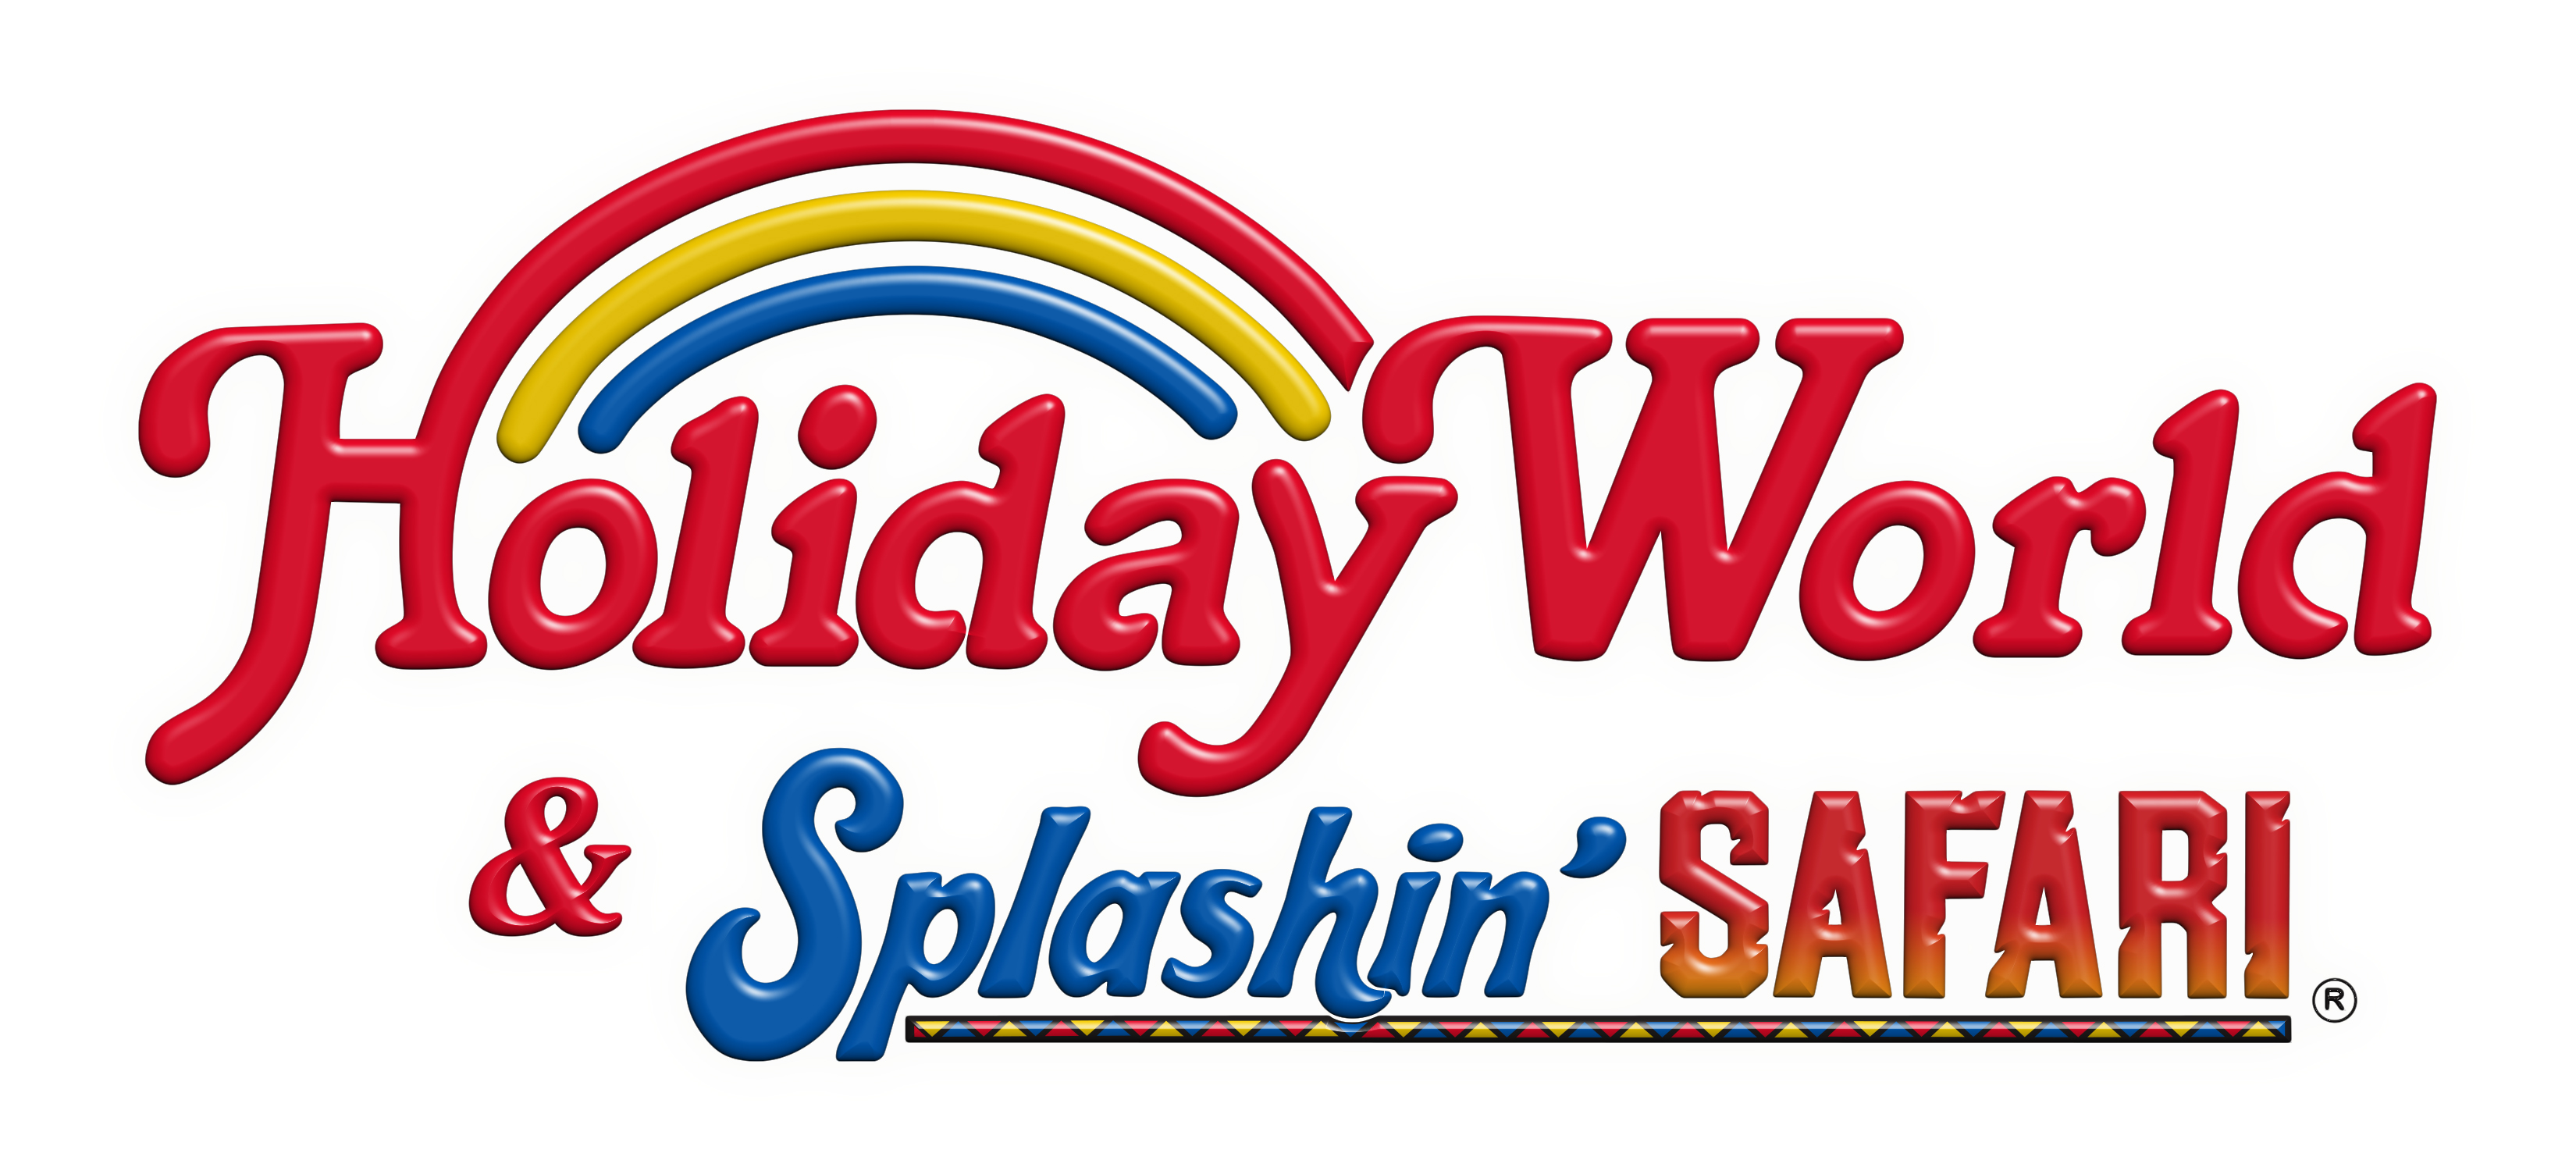 Holiday World & Splashin' Safari in Santa Claus, Indiana